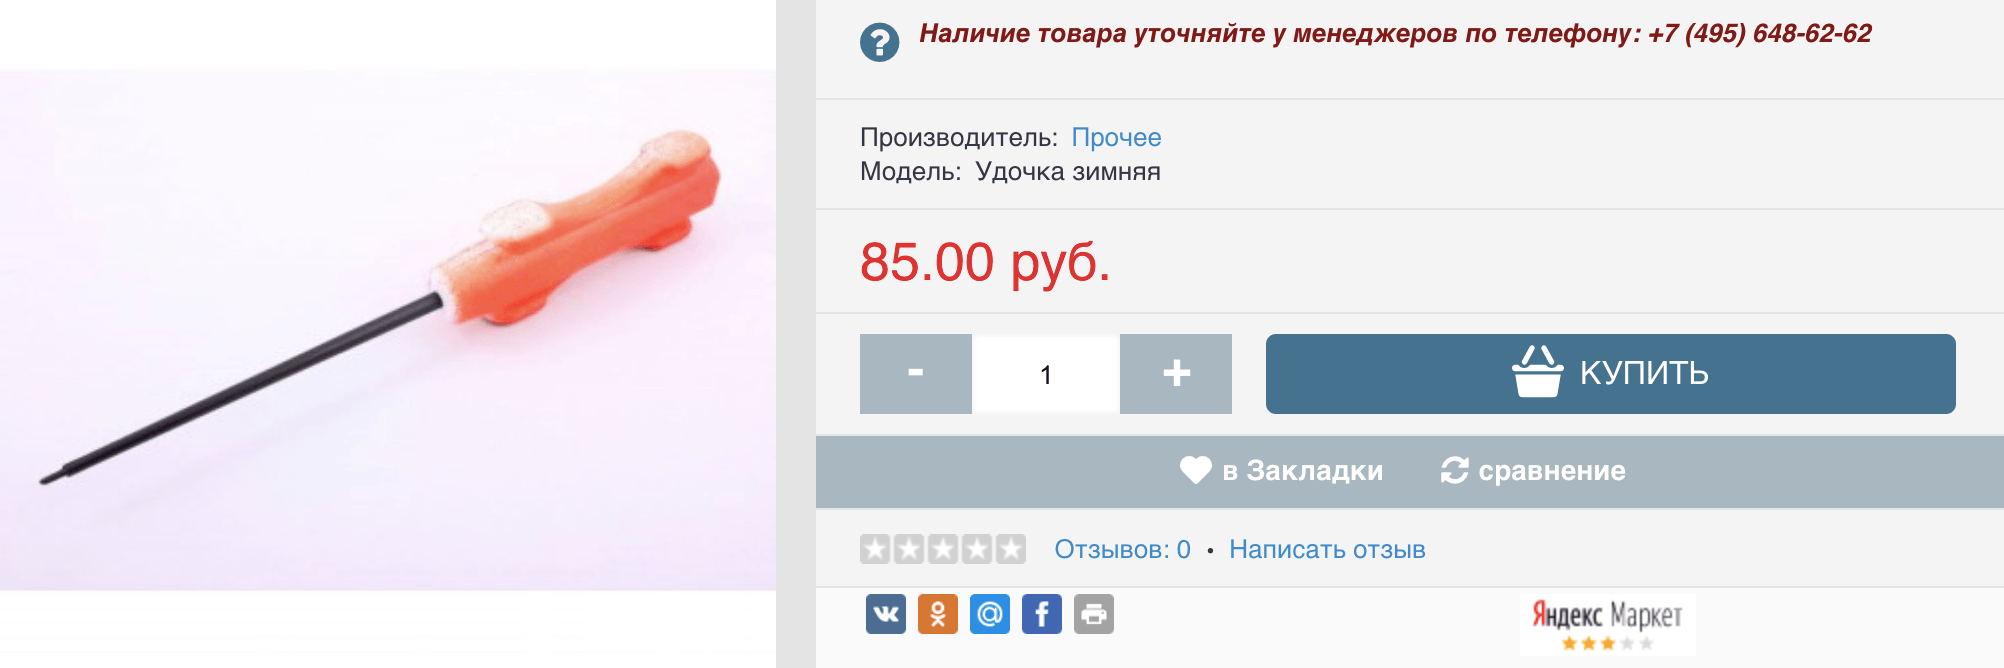 Самая простая кобылка стоит 85 ₽. Источник: kayman-k.ru